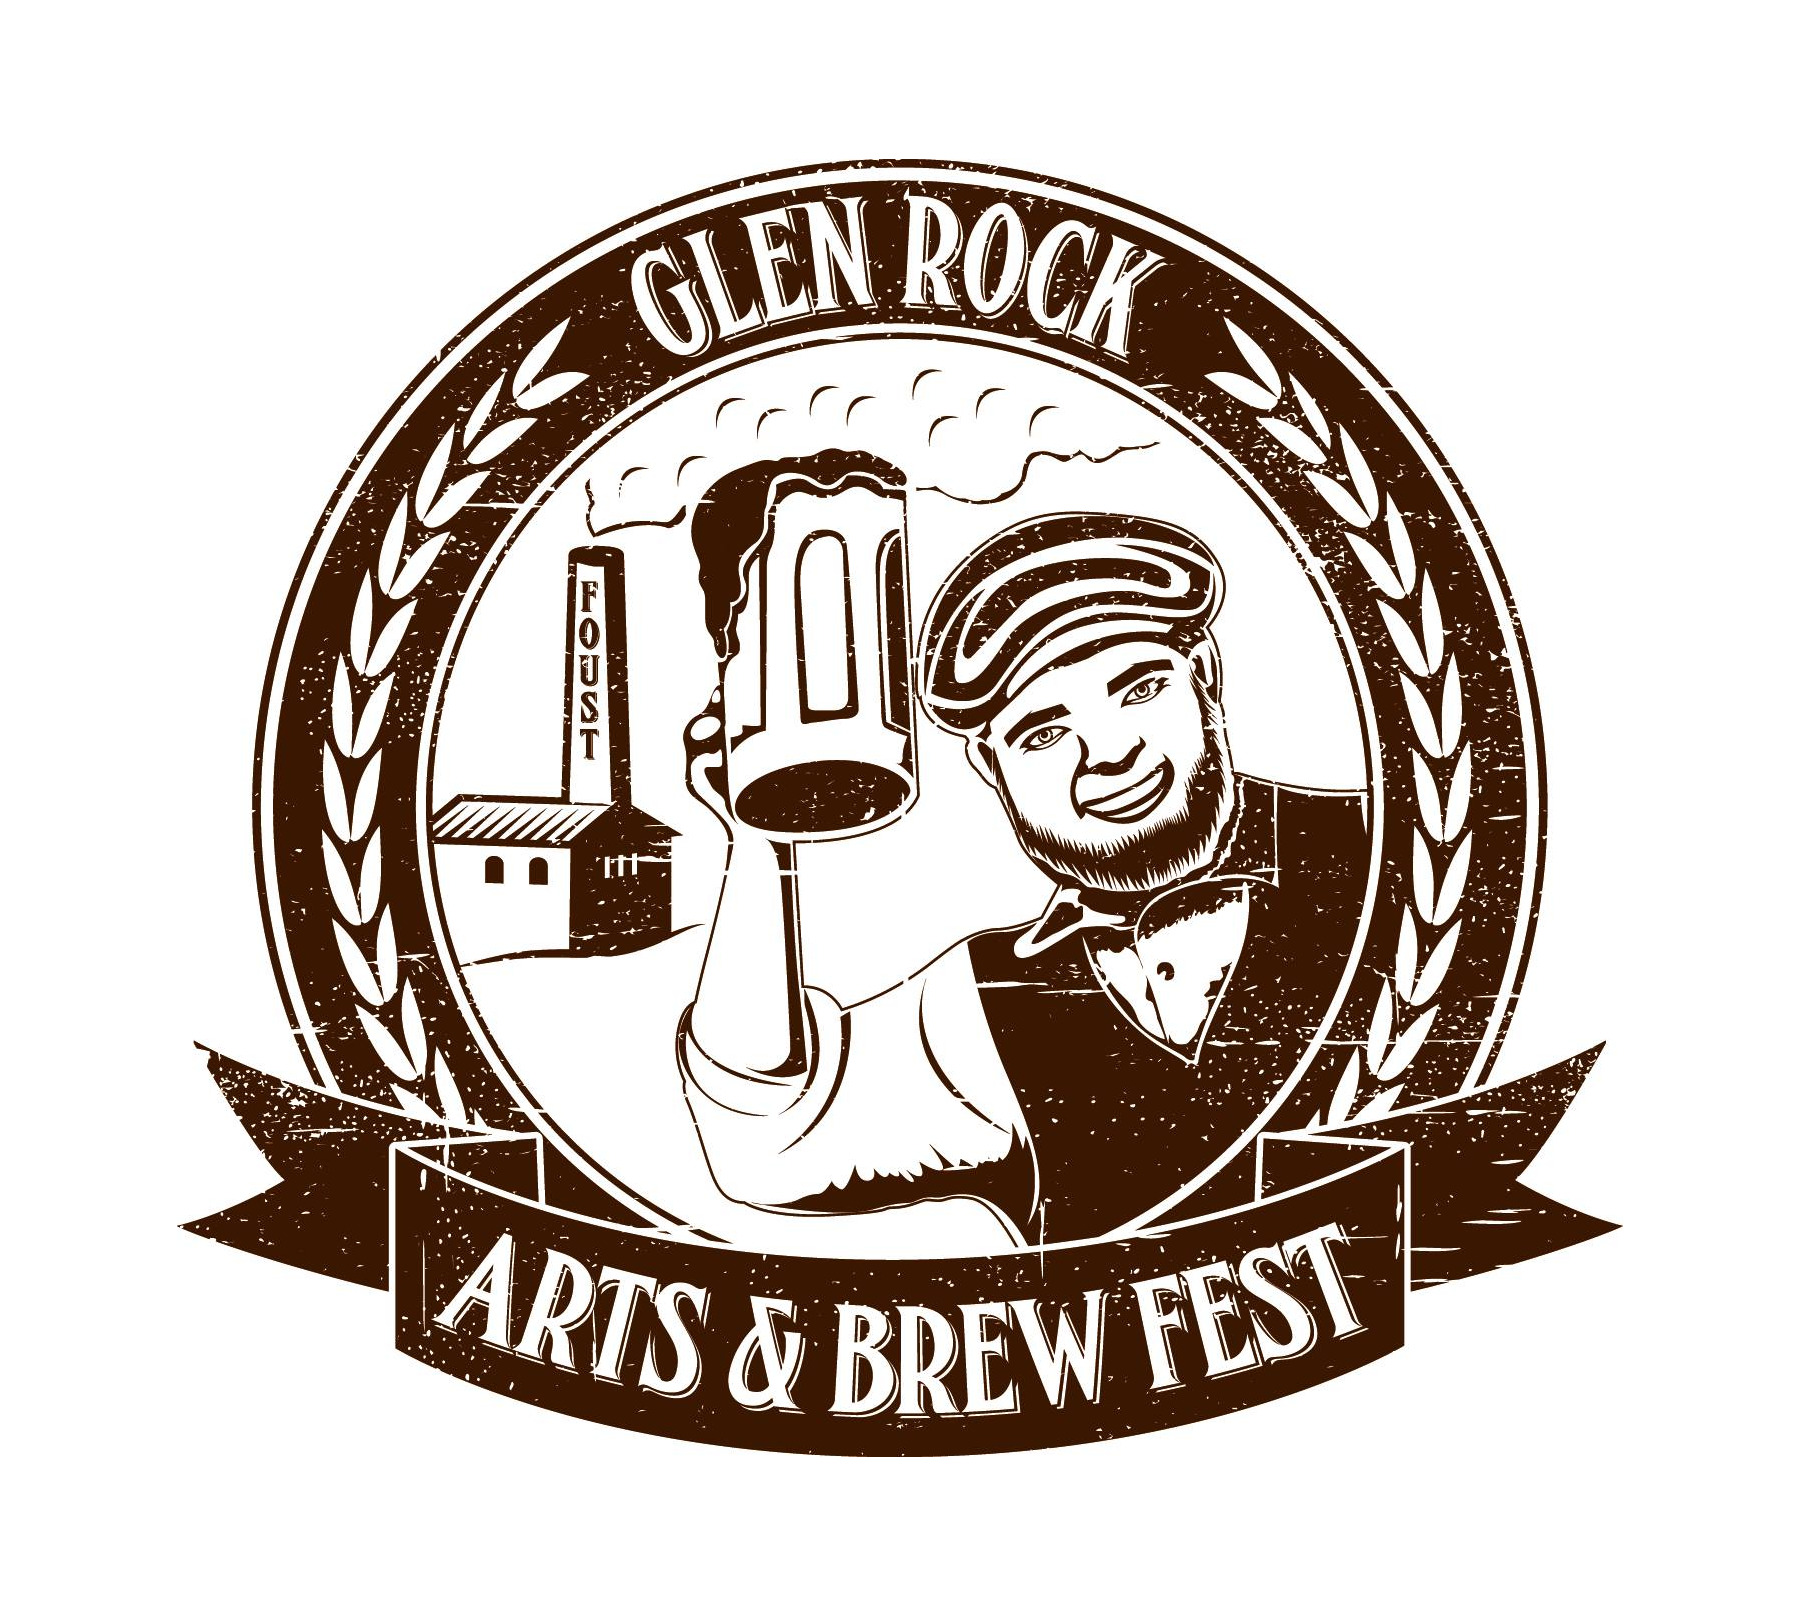 Glen Rock Arts & Brew Fest